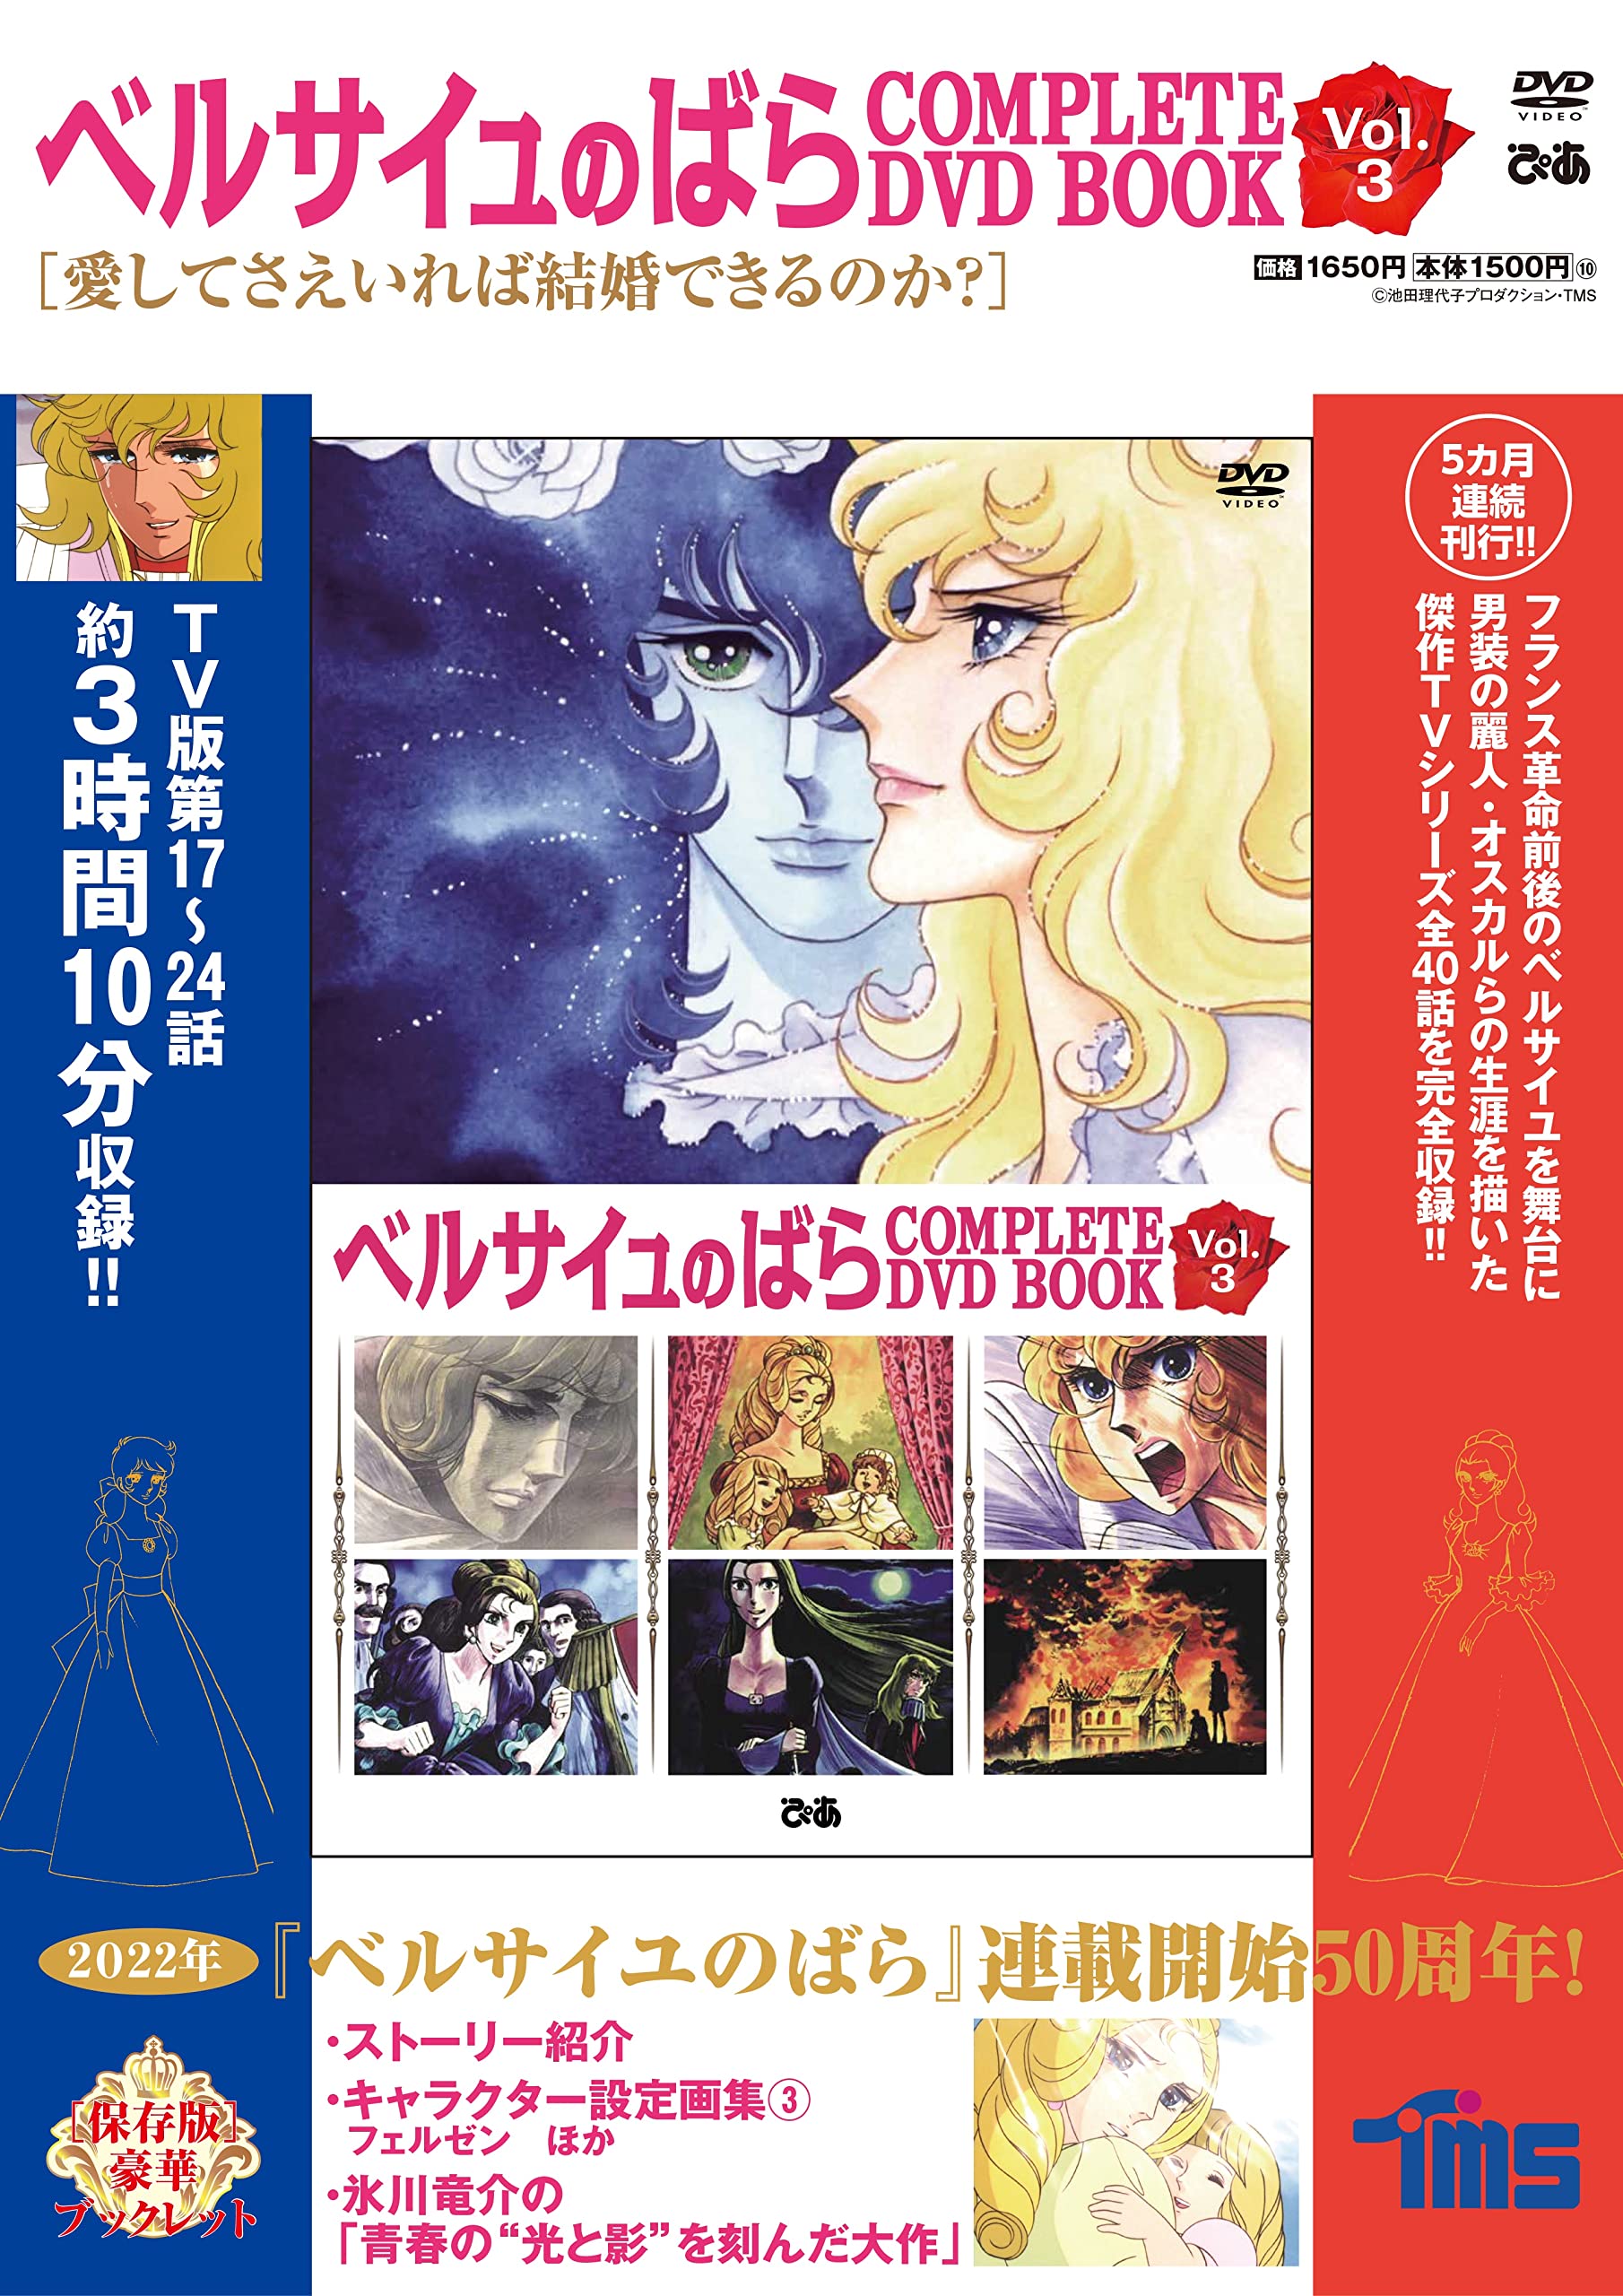 ベルサイユのばら COMPLETE DVD BOOK vol.3 (DVD)